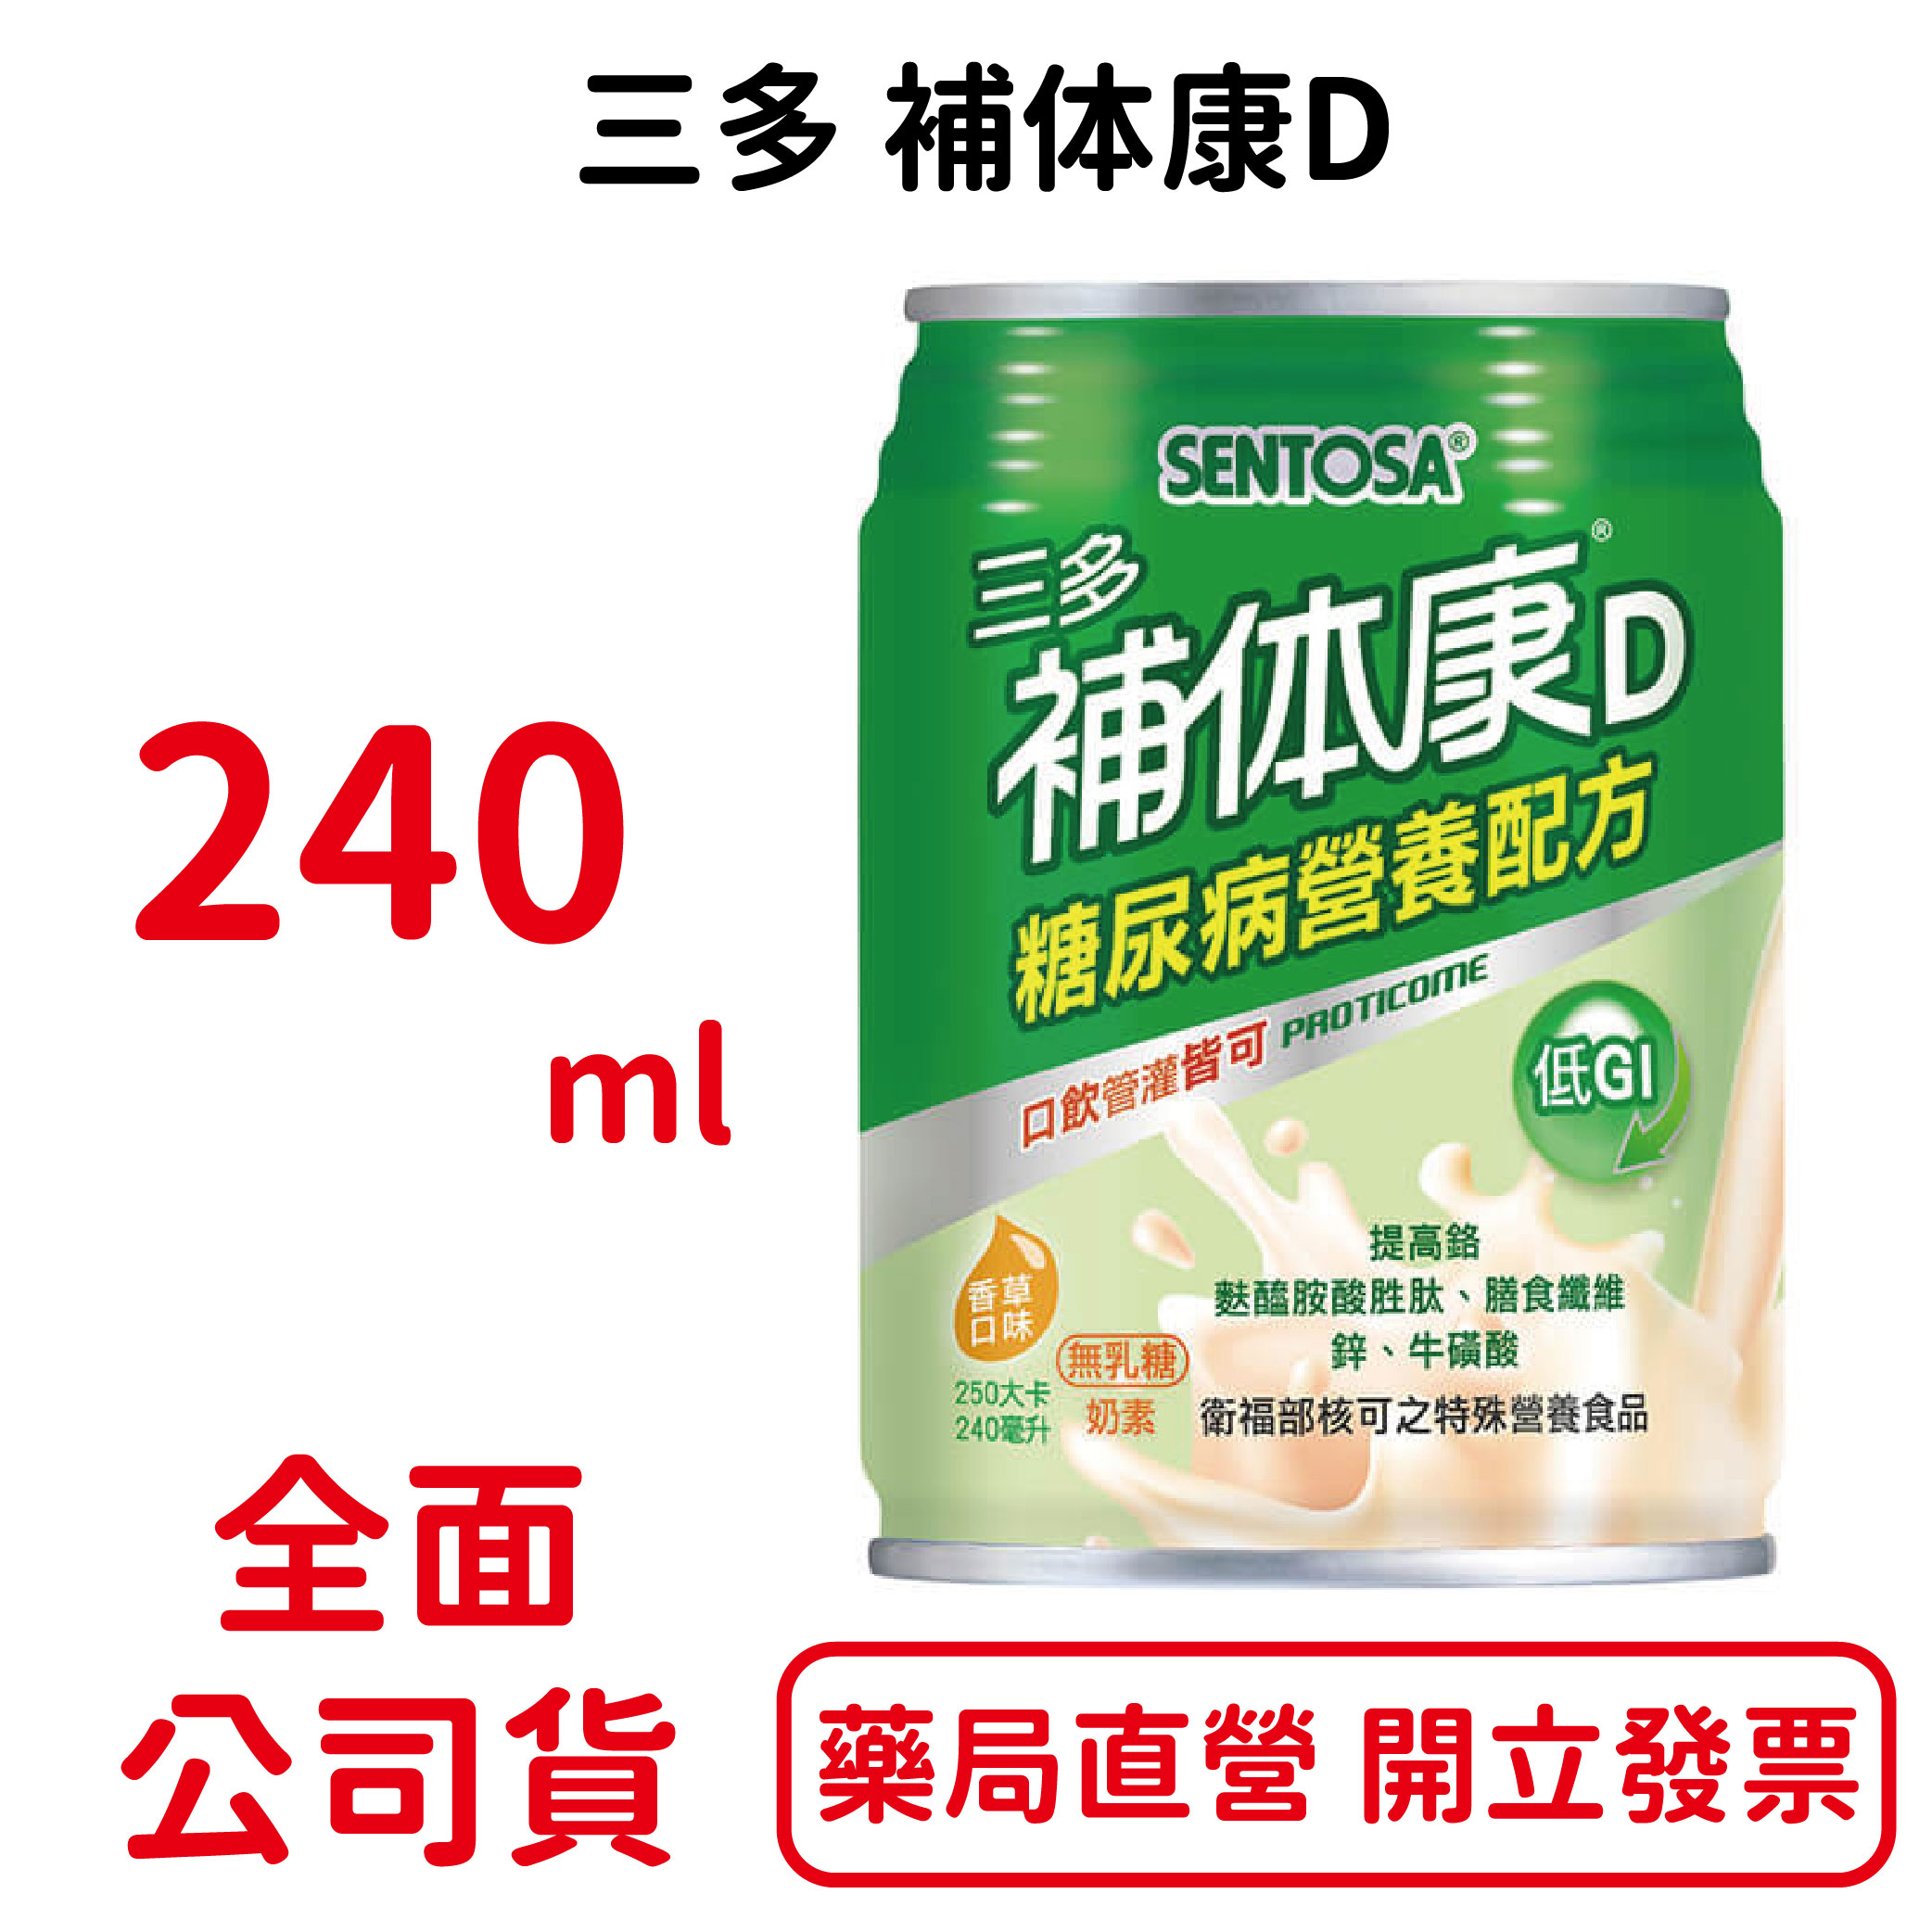 三多補体康D 240ml*24入/箱 補體康D 穩定營養配方 低GI 香草口味